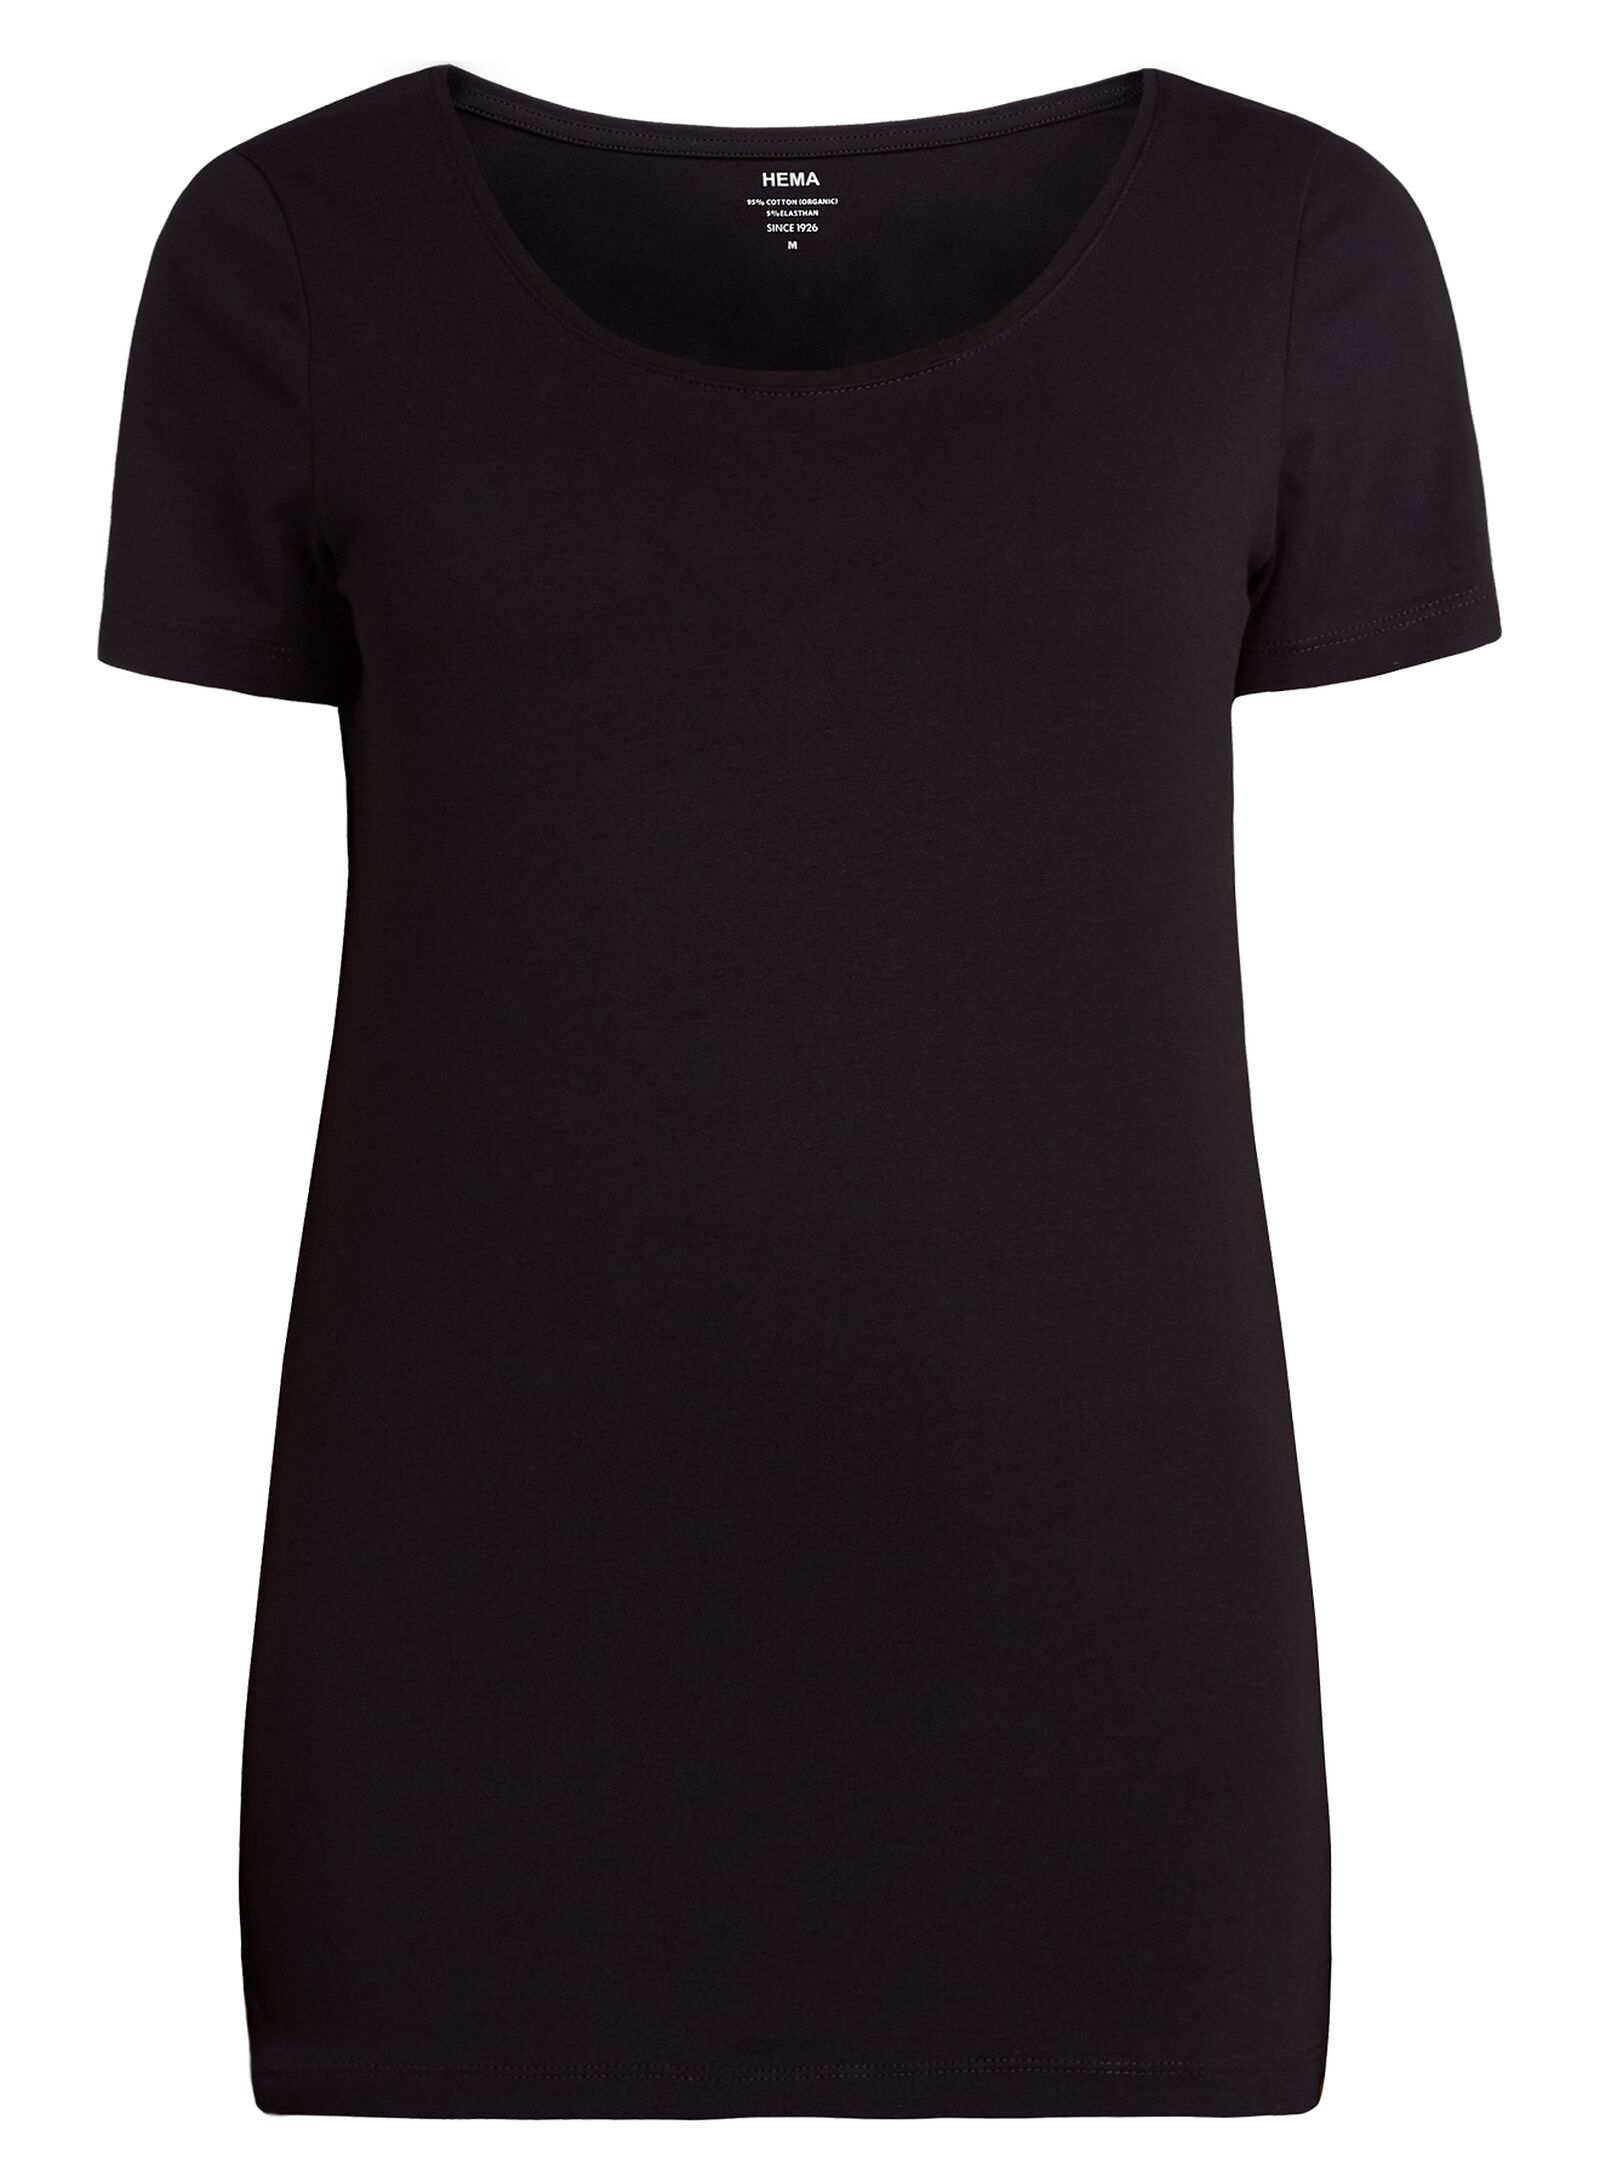 Image of HEMA Dames T-shirt Zwart (zwart)